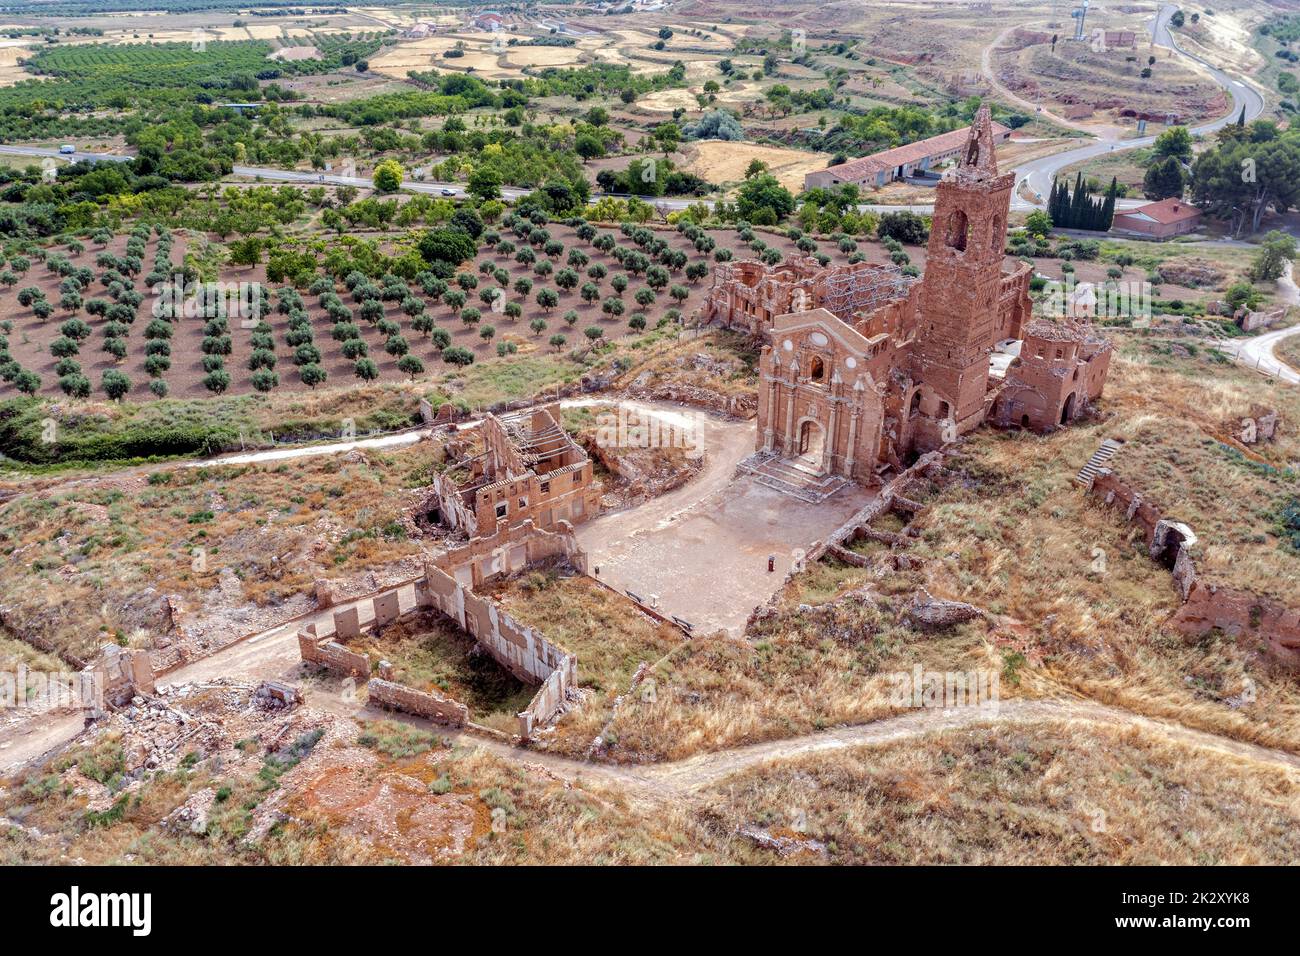 Ein Blick auf die Überreste der Altstadt von Belchite, Spanien, die während des Spanischen Bürgerkriegs zerstört und von da an verlassen wurde, mit Blick auf die Kirche San Martin de Tours Stockfoto